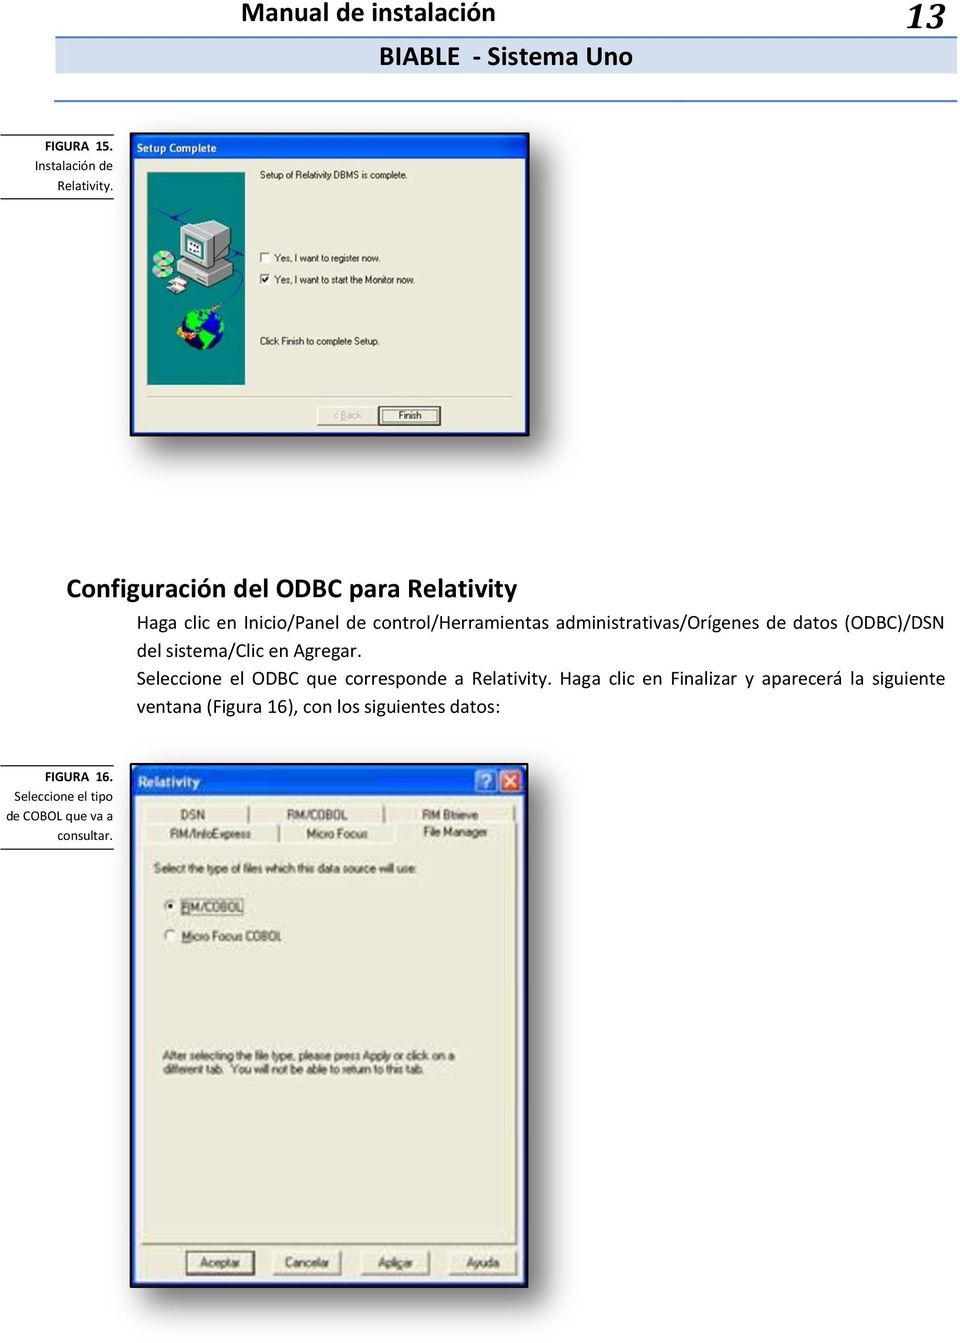 administrativas/orígenes de datos (ODBC)/DSN del sistema/clic en Agregar.